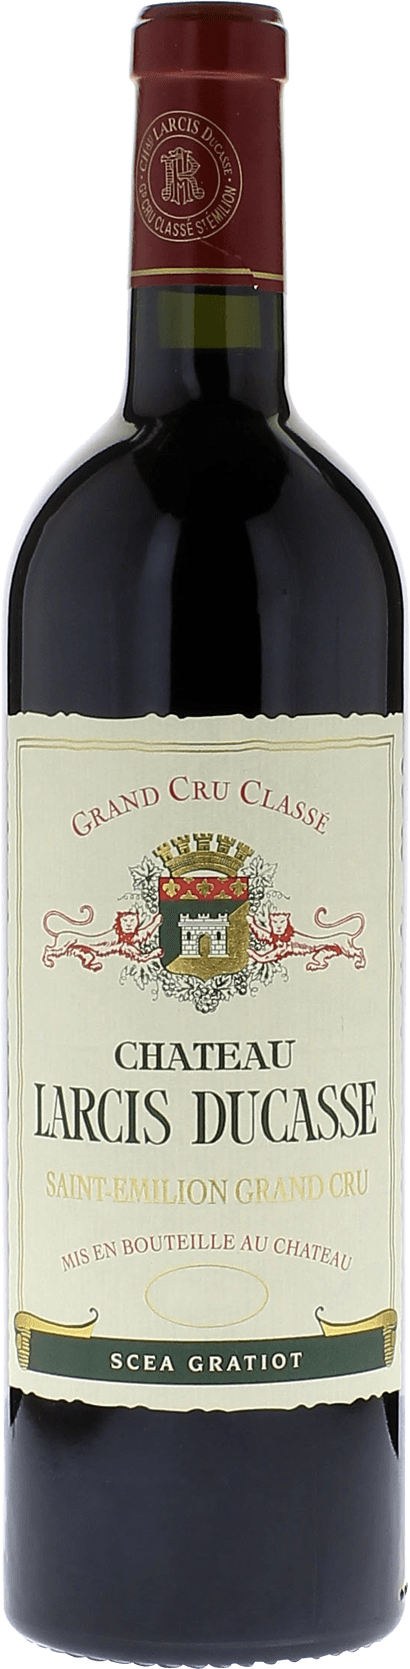 Larcis ducasse 2017 Grand cru class Saint-Emilion, Bordeaux rouge